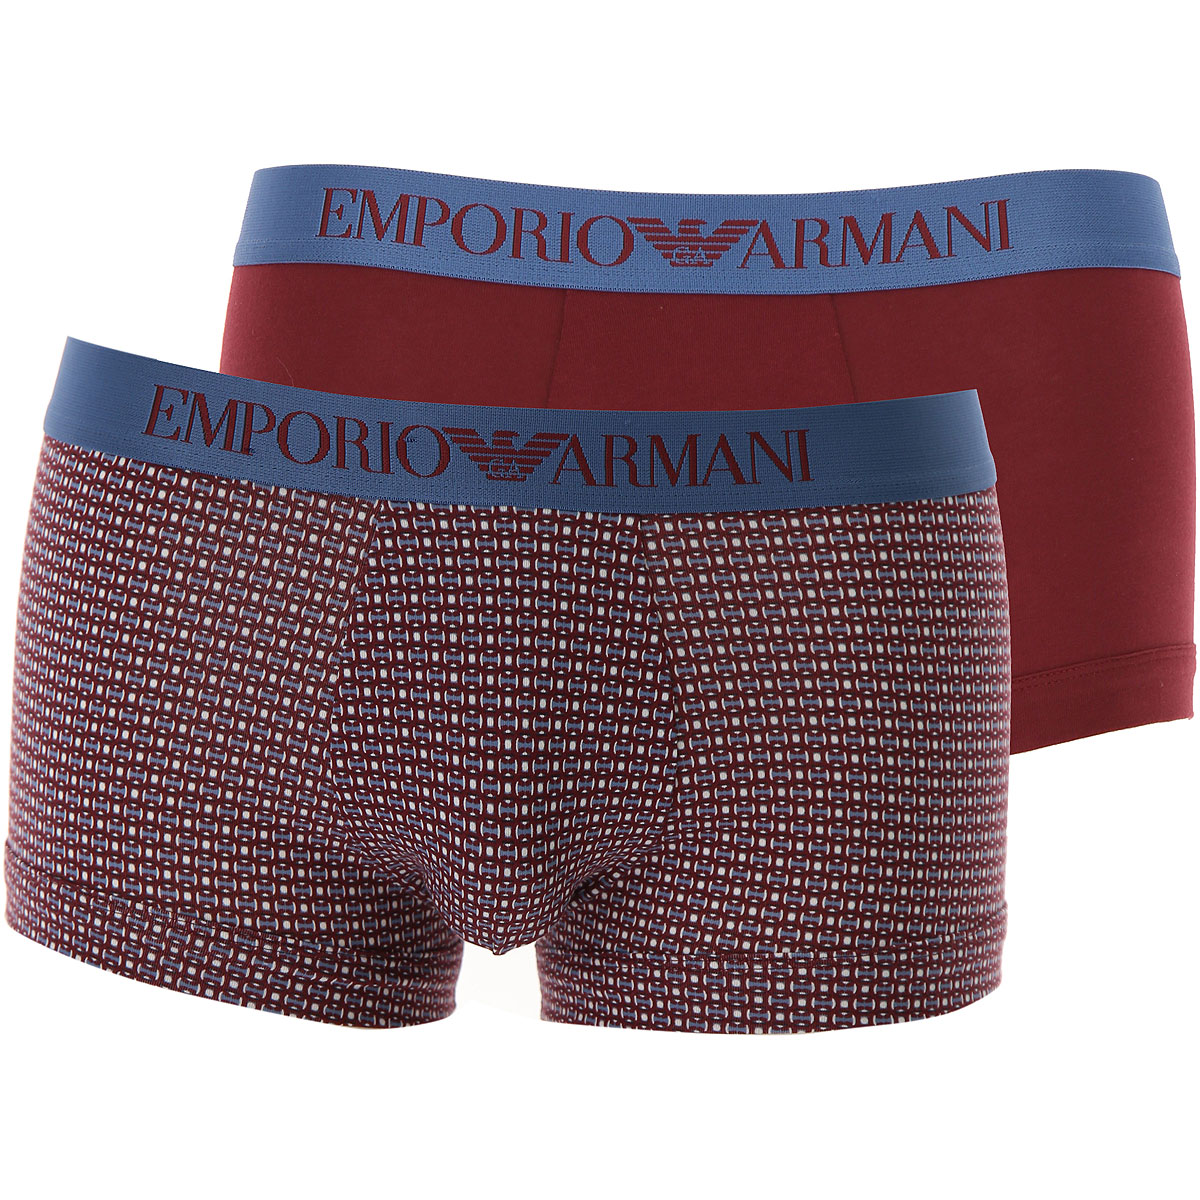 Emporio Armani Boxer Shorts für Herren, Unterhose, Short, Boxer Günstig im Sale, 2 Pack, Bordeauxrot, Baumwolle, 2017, L S